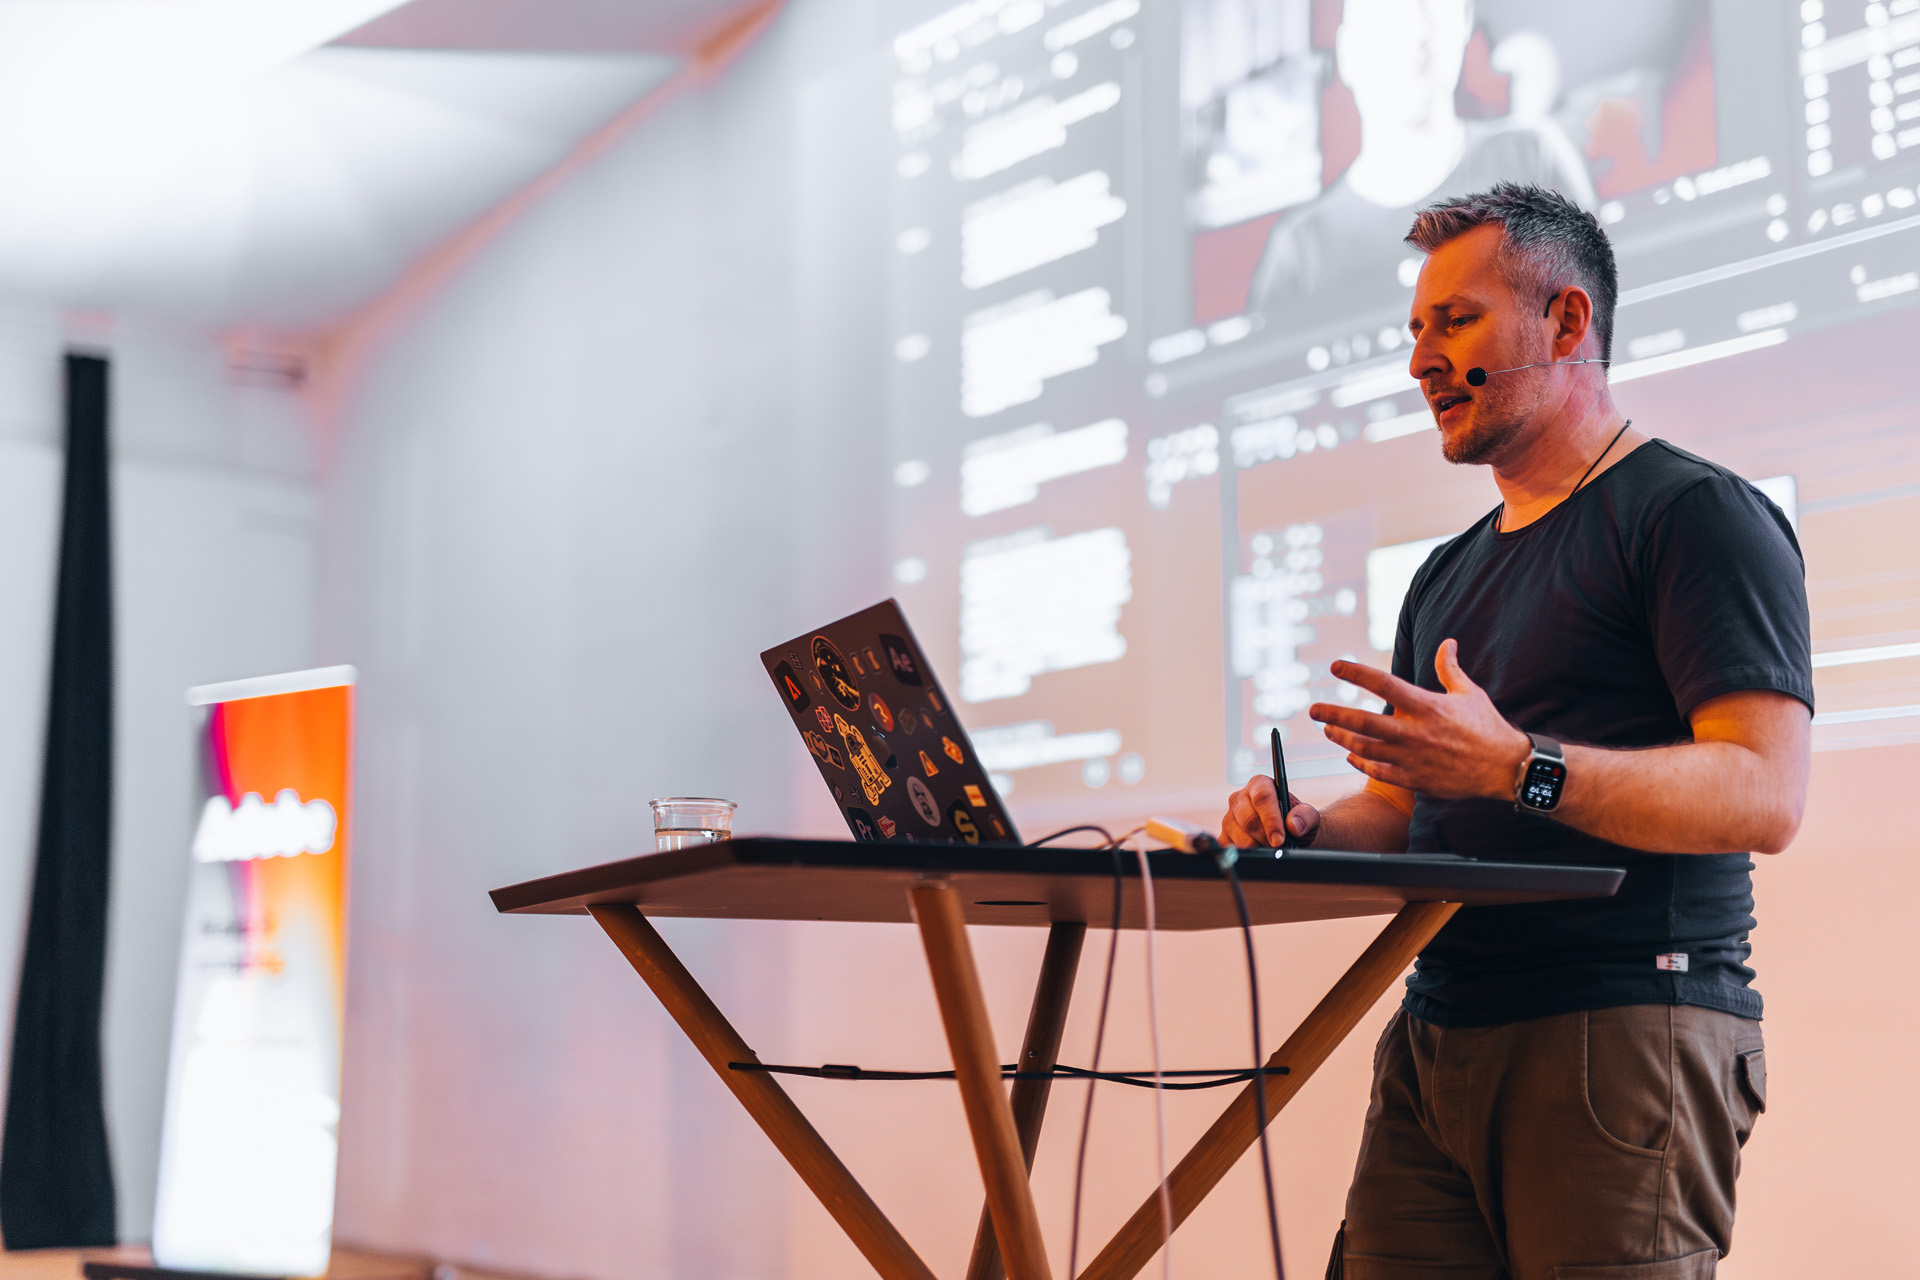 Speaker auf einer Adobe Veranstaltung in München erklärt Premiere Pro